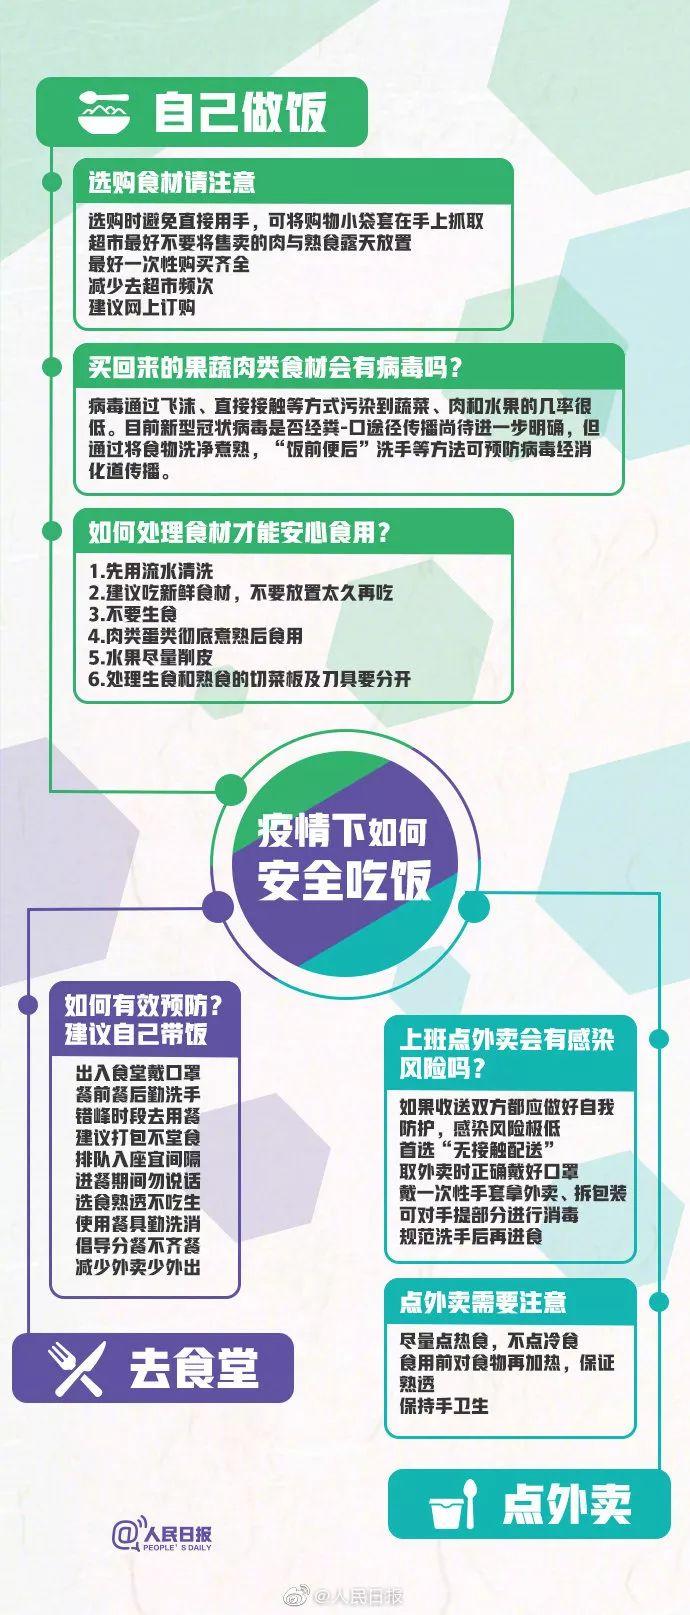 上海立信会计金融学院关于2020年硕士研究生入学考试初试成绩查询的通知